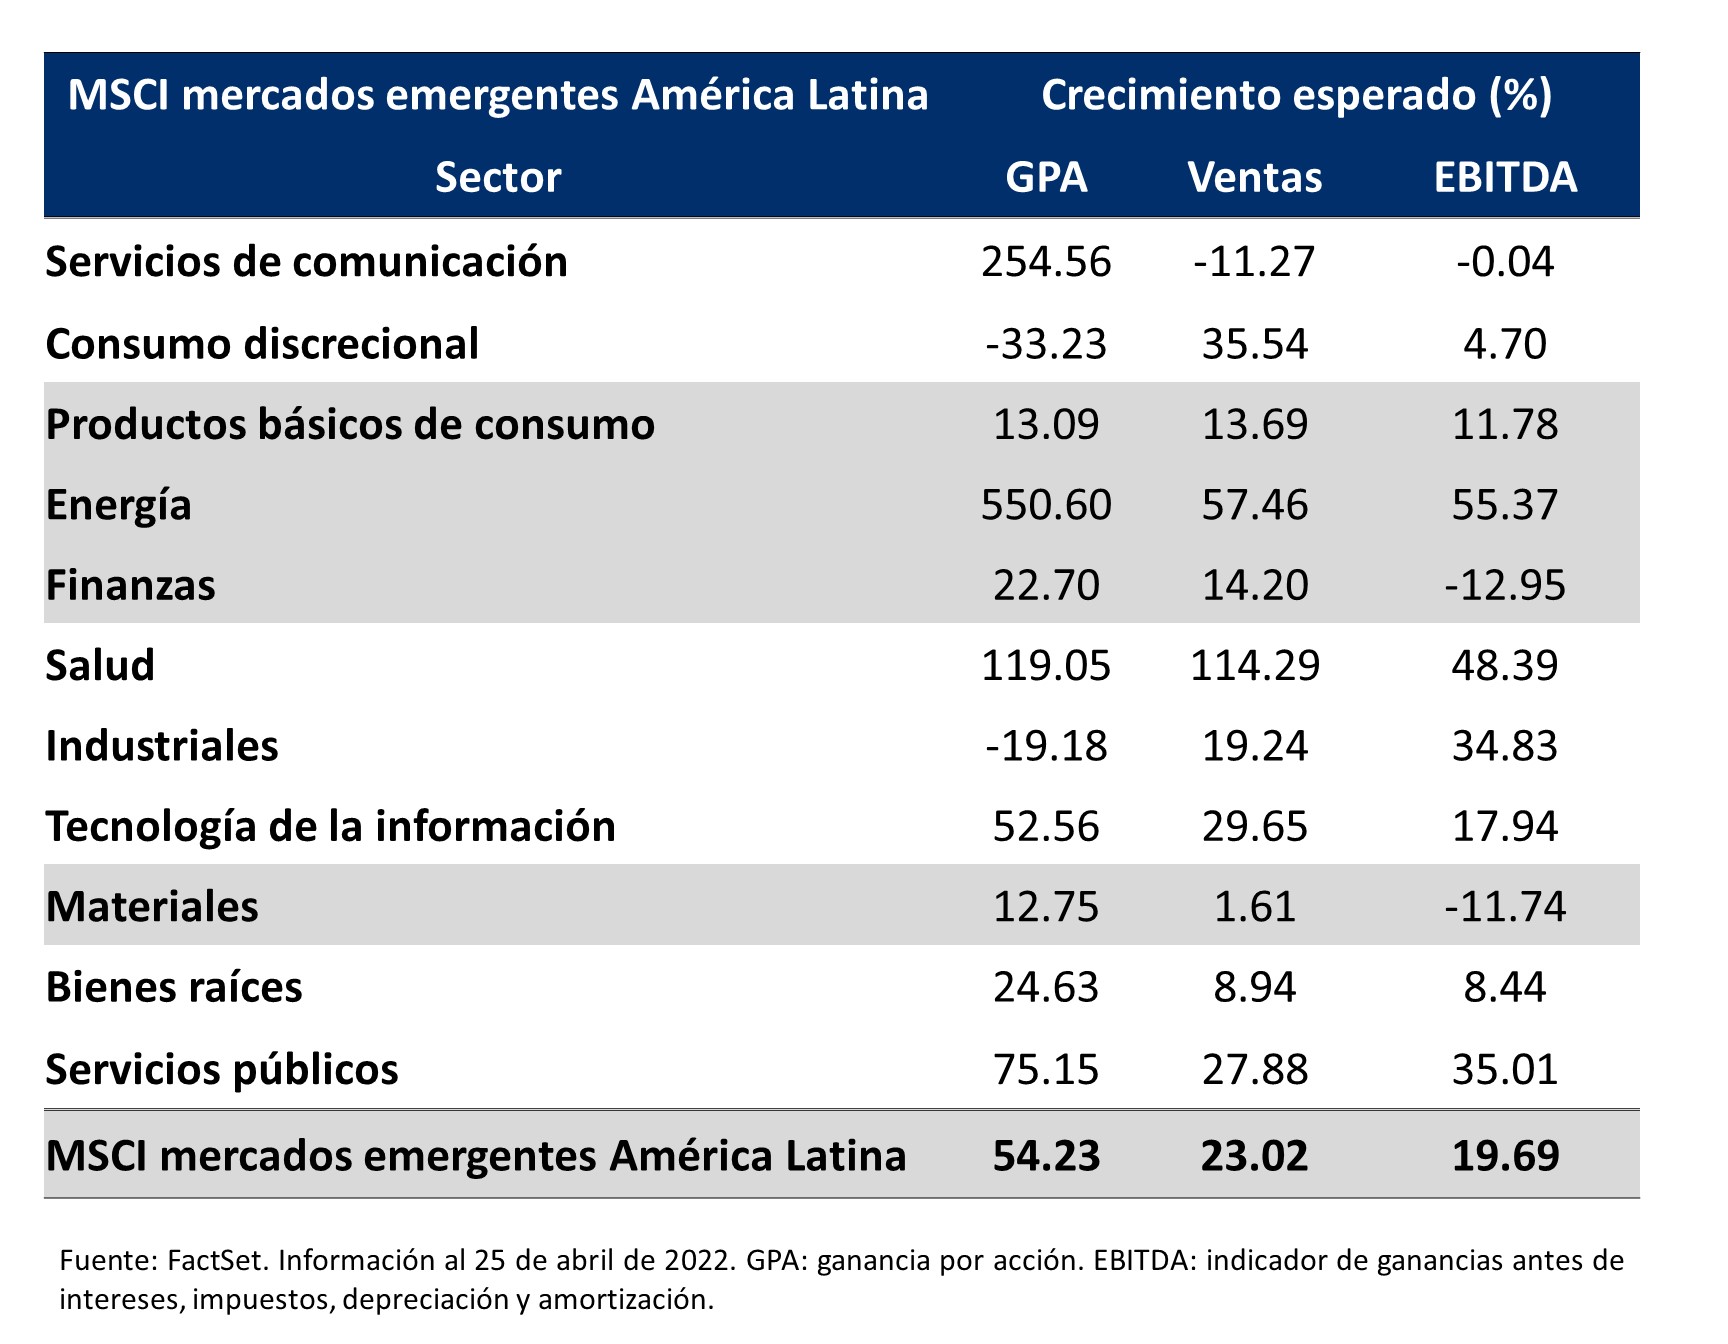 Esta tabla describe las distintas categorías del índice MSCI para mercados emergentes de América Latina y su crecimiento esperado.